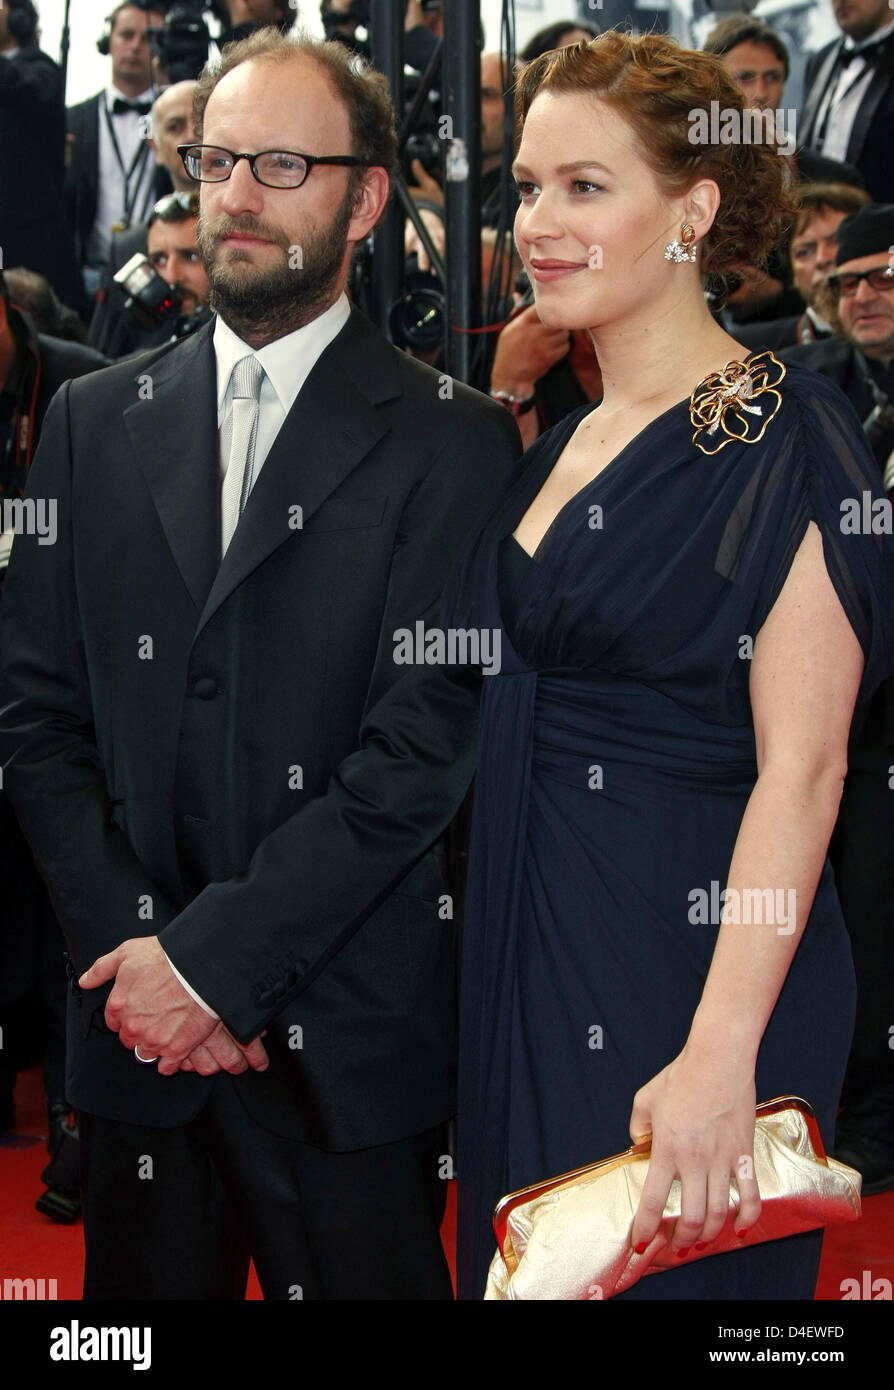 Regisseur Steven Soderbergh und Schauspielerin Franka Potente kommen für die Premiere von "Che" läuft im Wettbewerb der 61. Filmfestspiele von Cannes in Cannes, Frankreich, 21. Mai 2008. Foto: Hubert Boesl Stockfoto